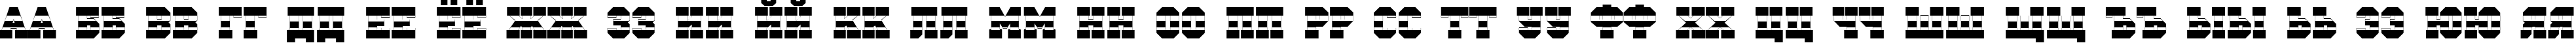 Пример написания русского алфавита шрифтом a_CampusStrip